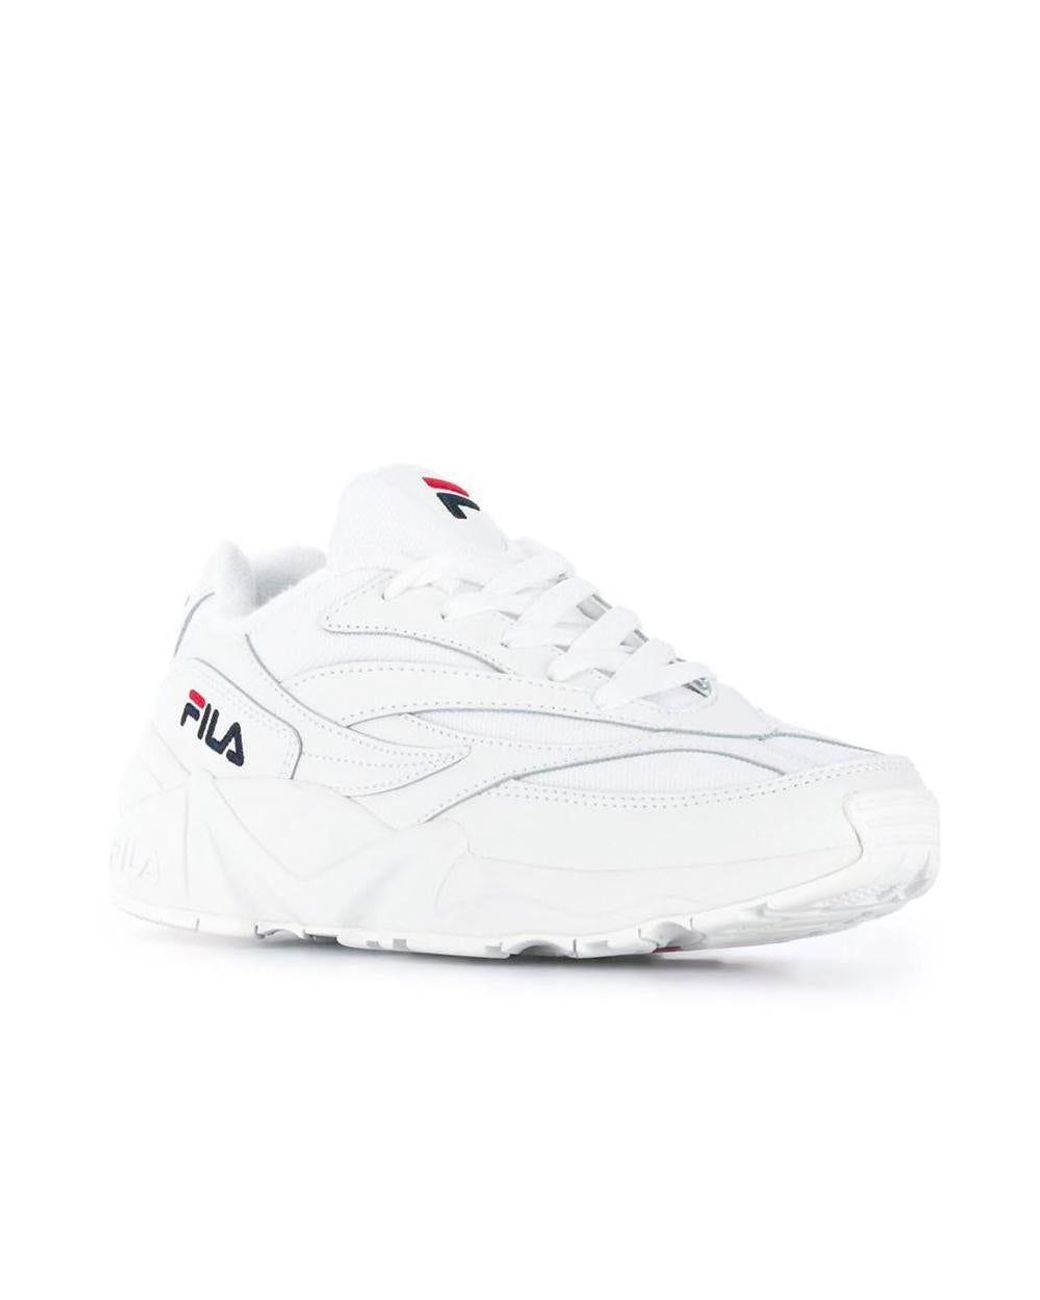 Fila V94m Low Wmn Sneakers in White | Lyst